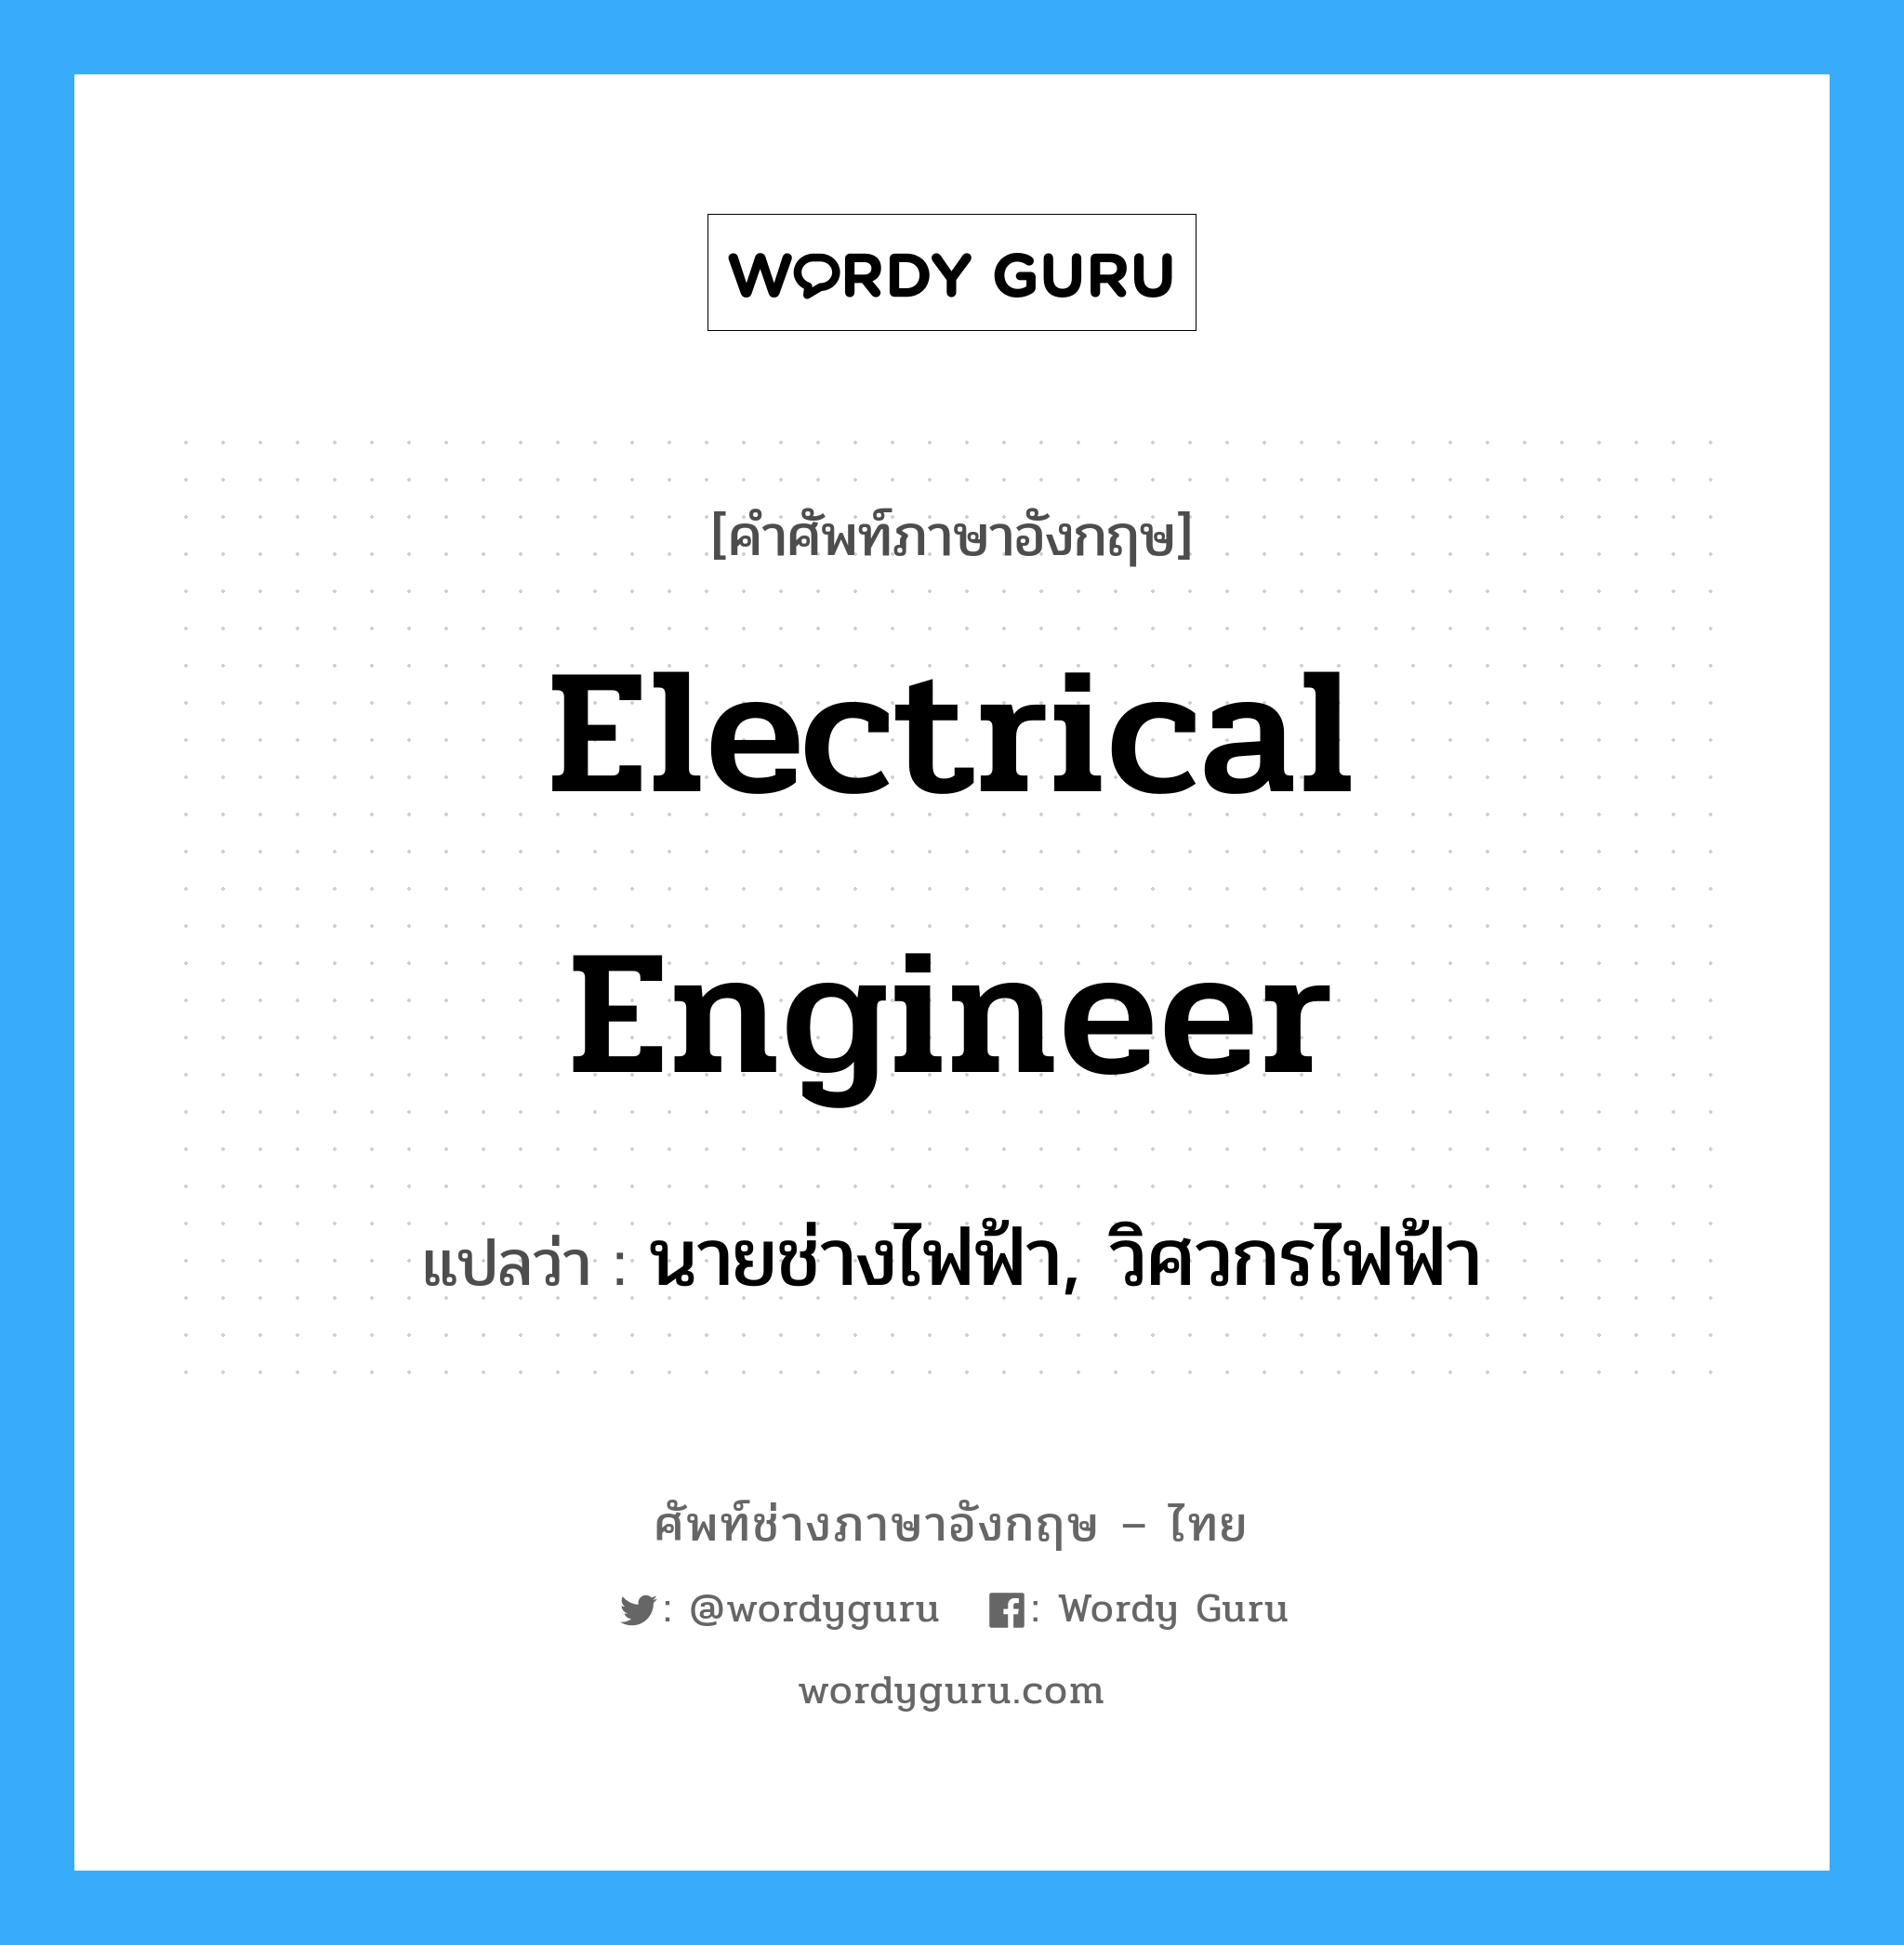 นายช่างไฟฟ้า, วิศวกรไฟฟ้า ภาษาอังกฤษ?, คำศัพท์ช่างภาษาอังกฤษ - ไทย นายช่างไฟฟ้า, วิศวกรไฟฟ้า คำศัพท์ภาษาอังกฤษ นายช่างไฟฟ้า, วิศวกรไฟฟ้า แปลว่า electrical engineer